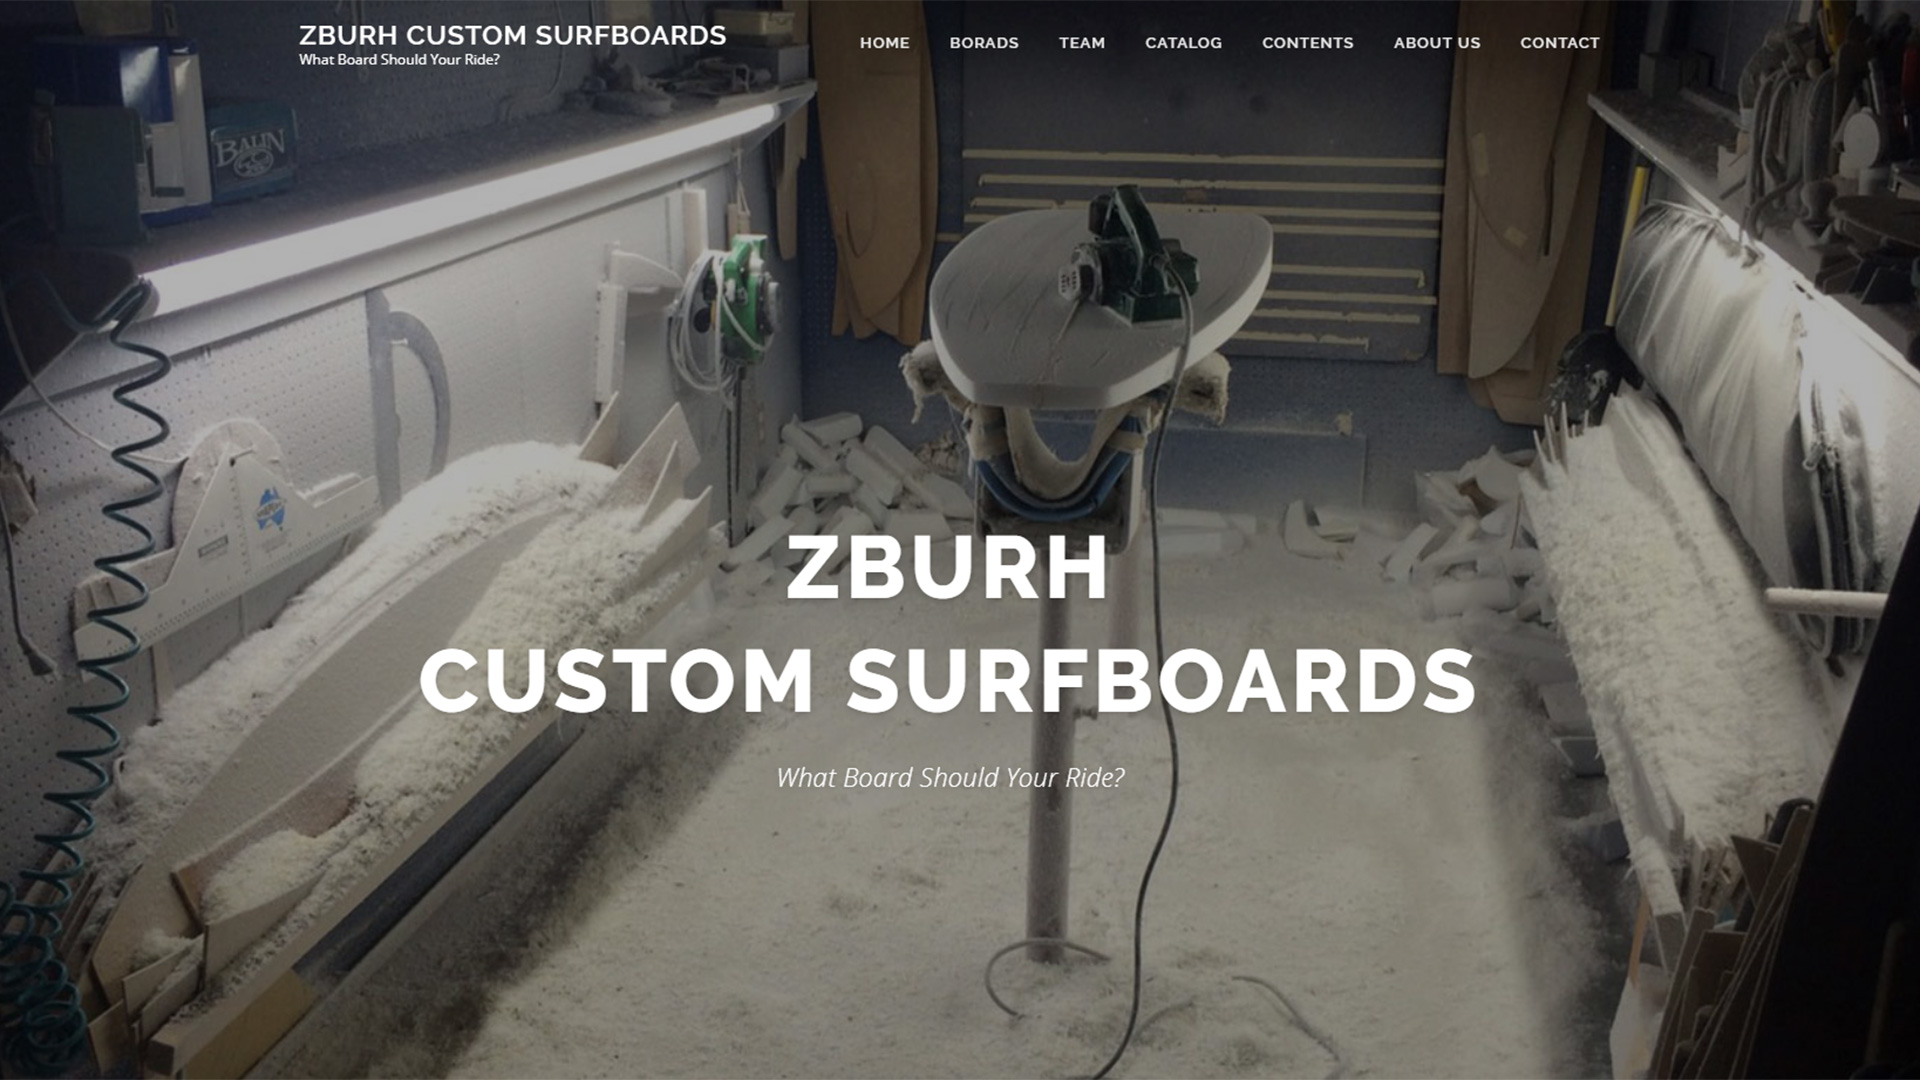 ZBURH CUSTOM SURFBOARDS